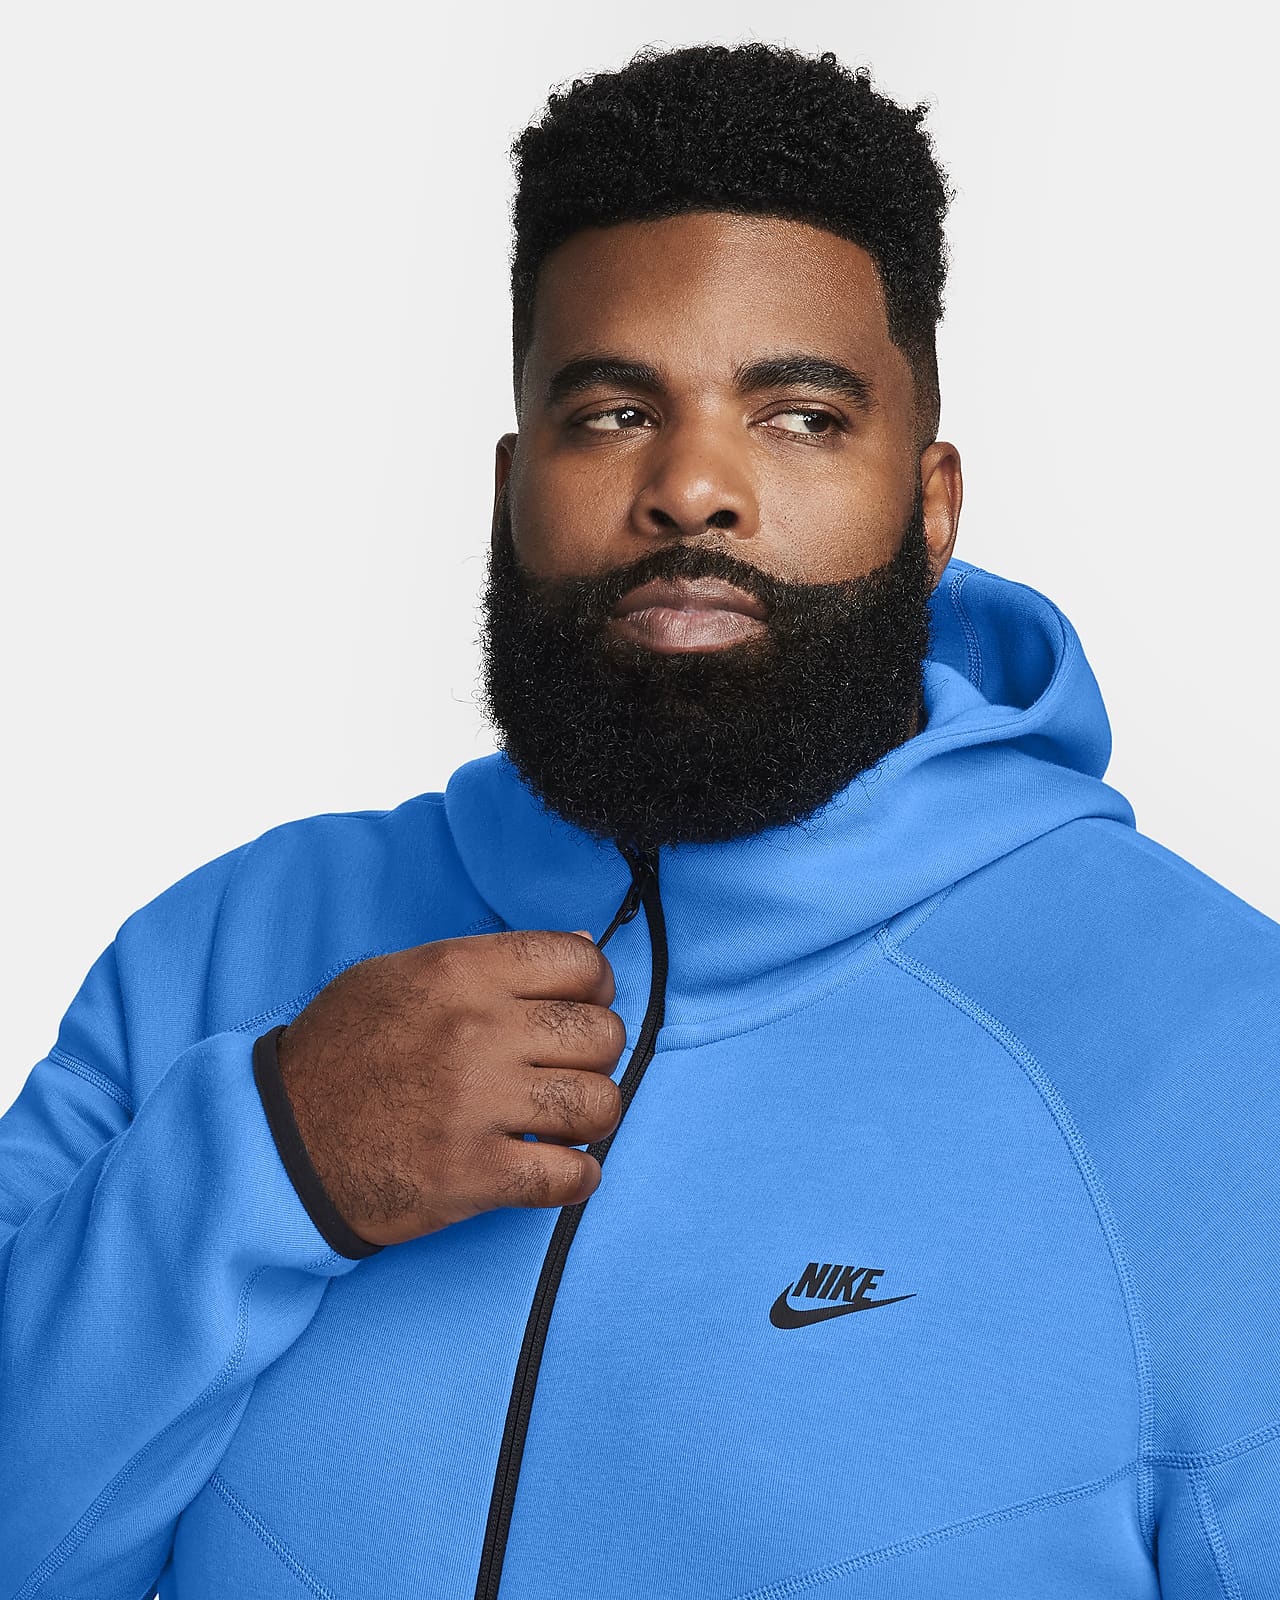 Nike Sportswear Tech Pack Men's Hooded Full-Zip Jacket (Black) Size M 